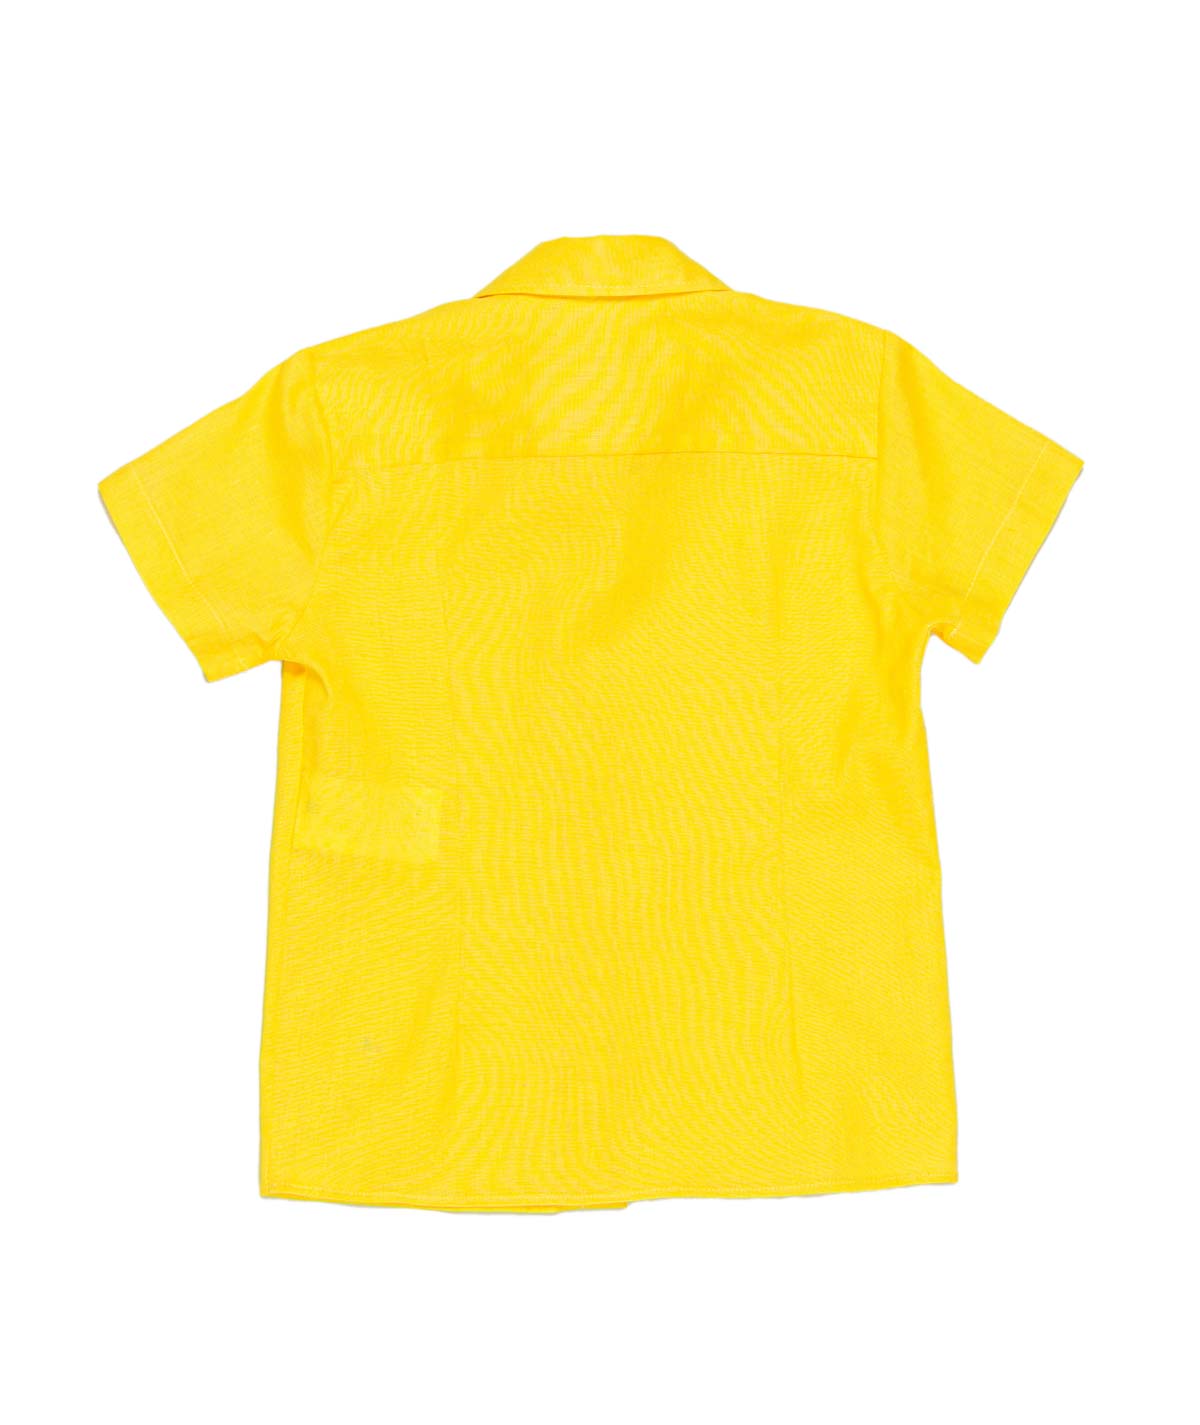 MANUEL RITZ Yellow Linen Blend Short Sleeve Shirt